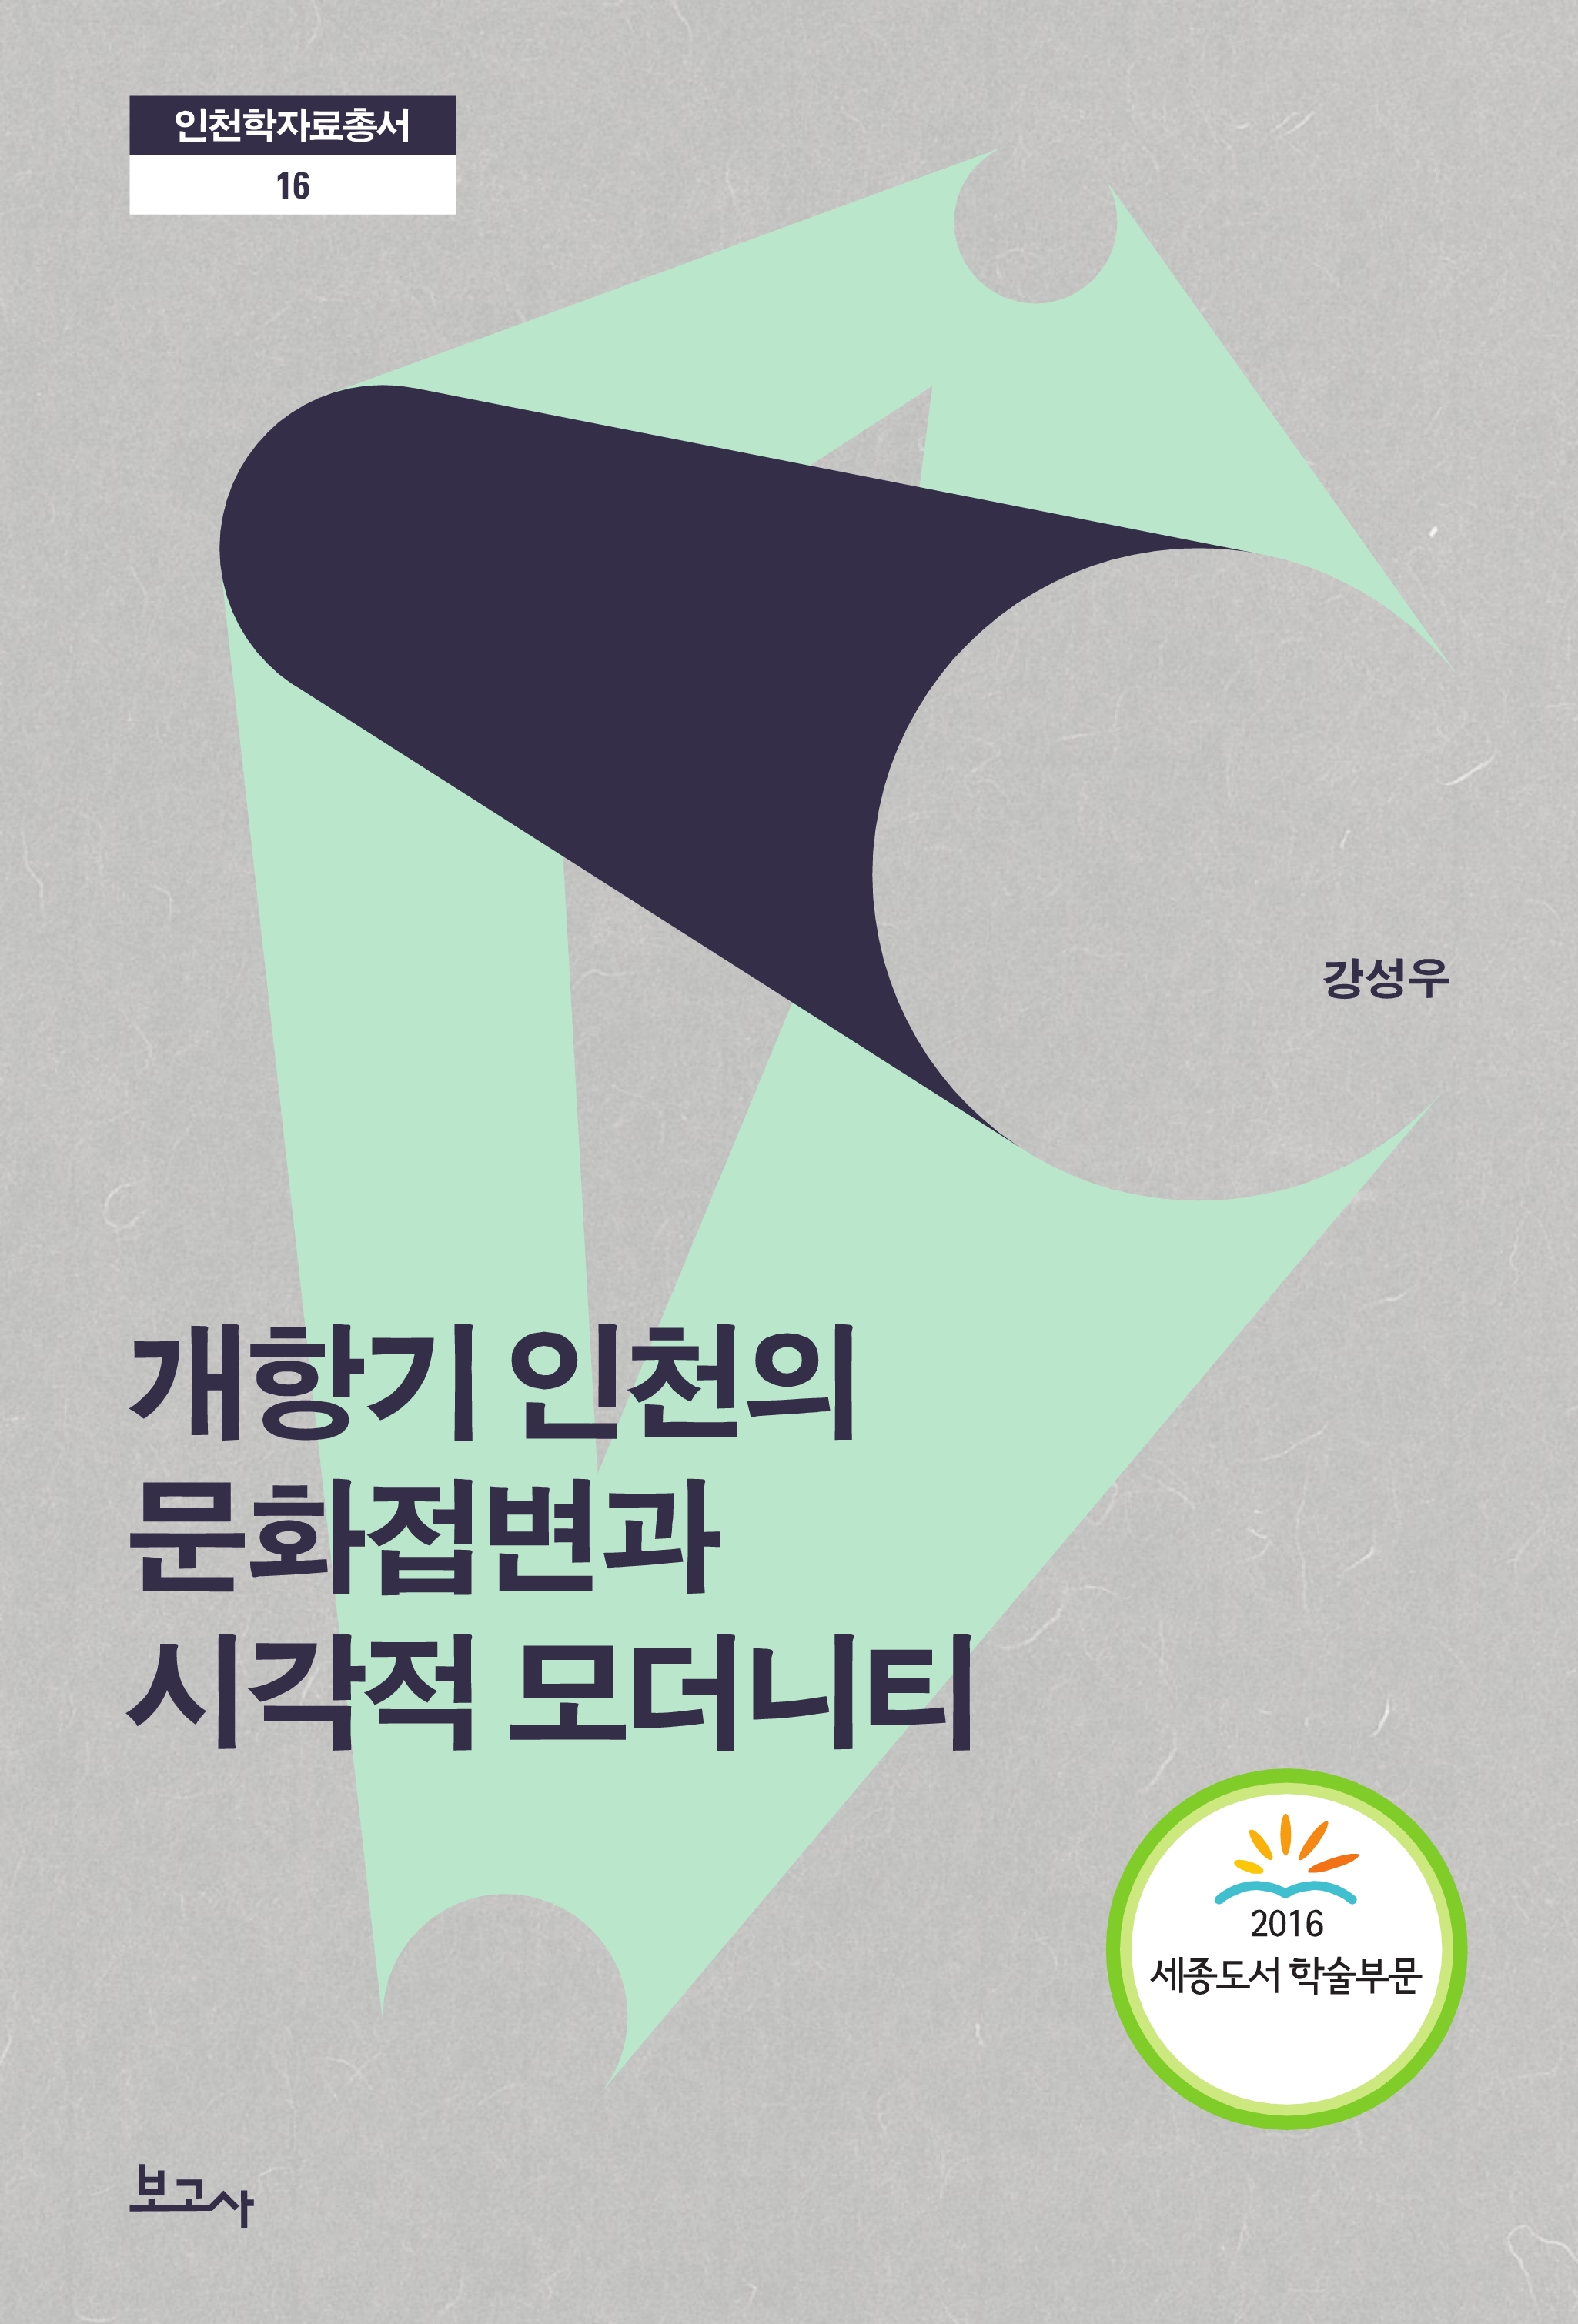 개항기 인천의 문화접변과 시각적 모더니티